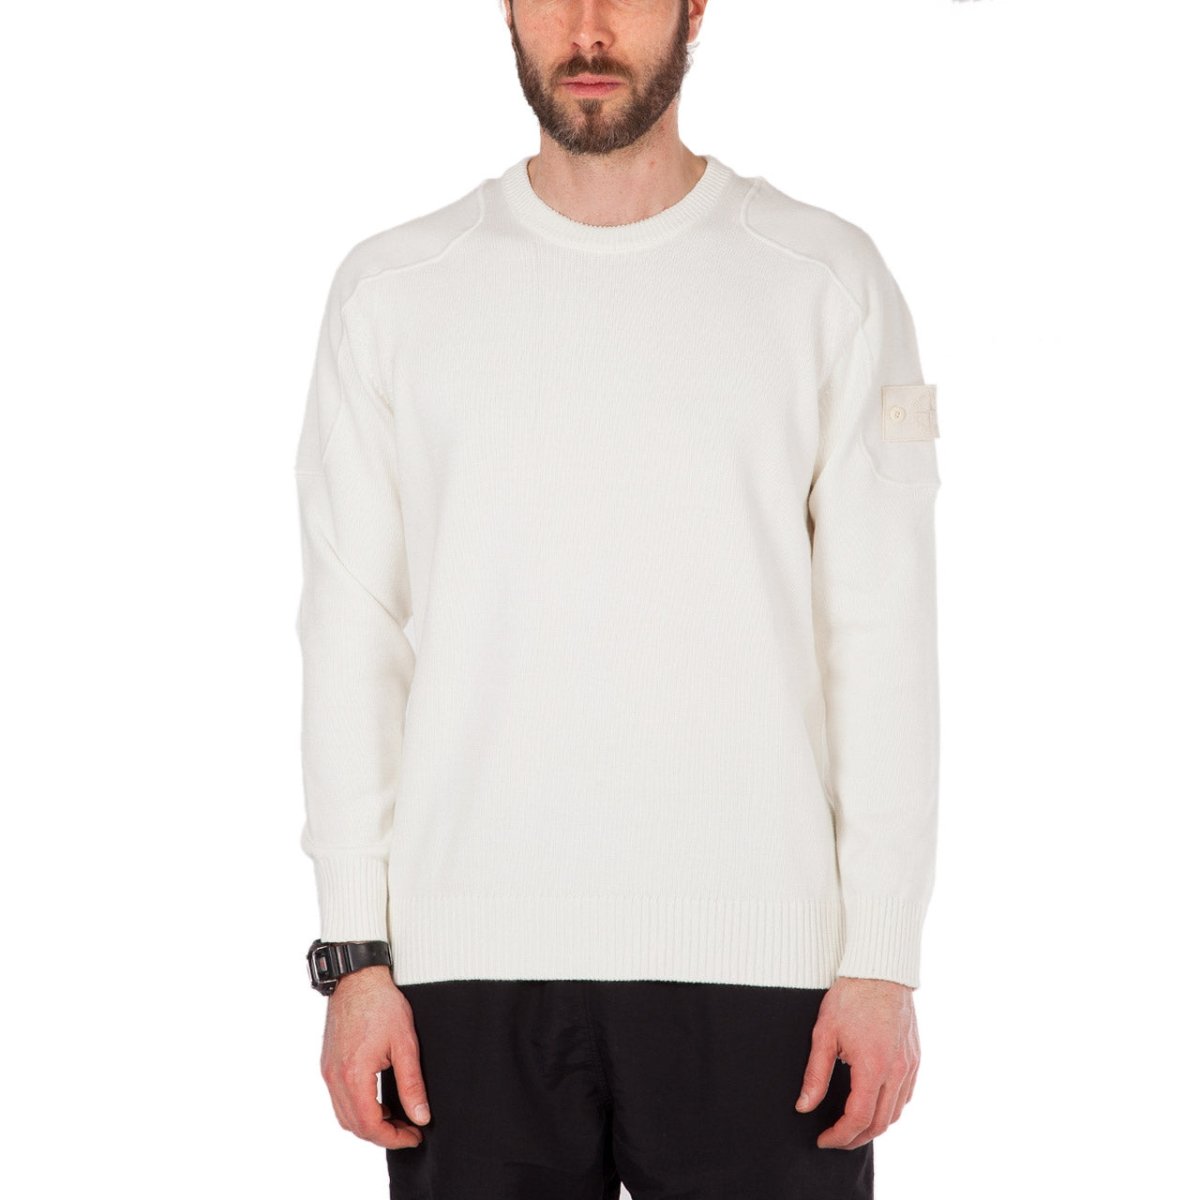 Stone Island Knittwear Sweater 'Ghost Piece' (Weiß)  - Allike Store